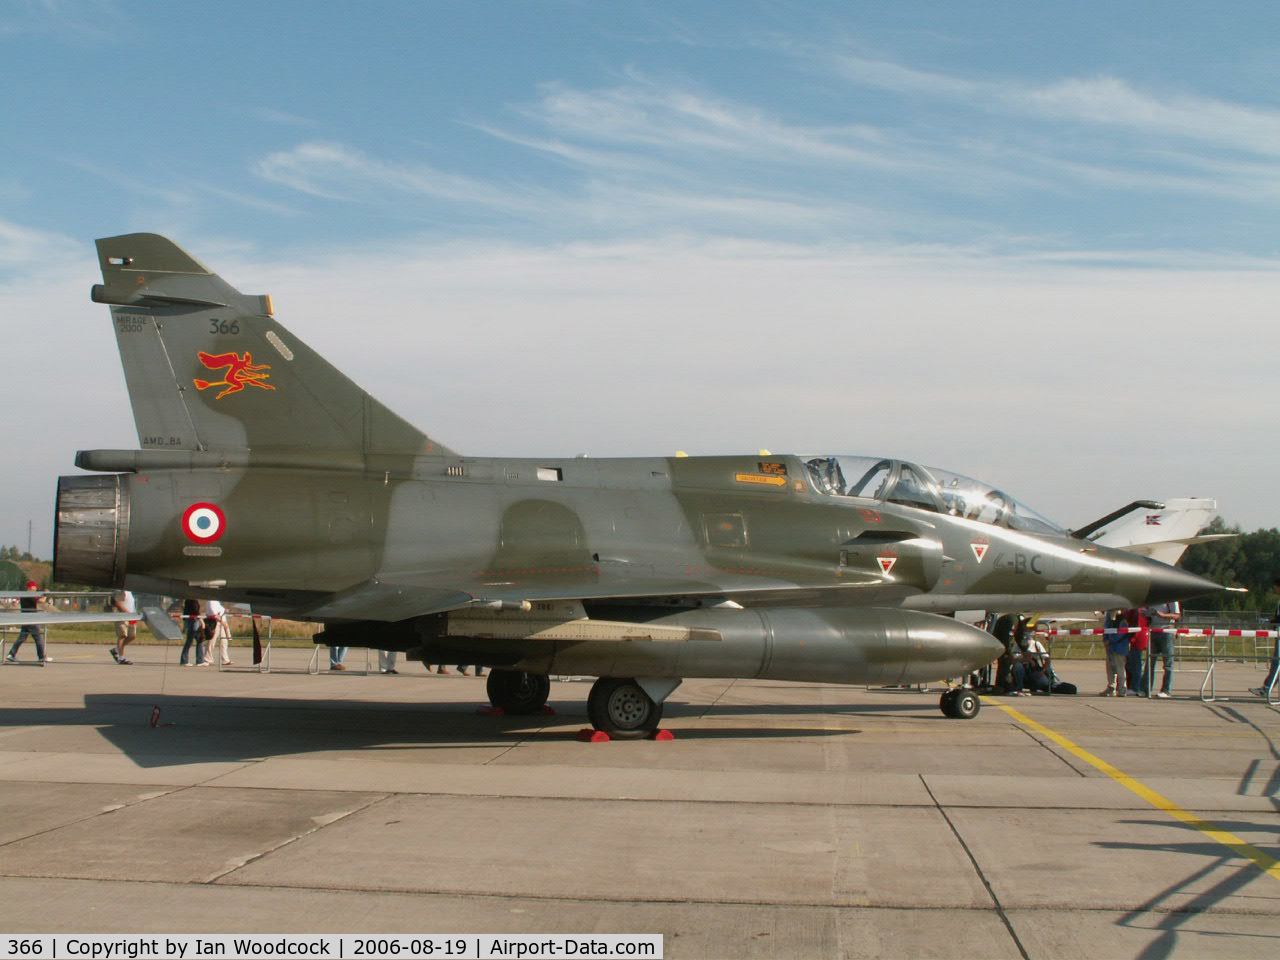 366, Dassault Mirage 2000N C/N 360, Dassault Mirage 2000N/French Air Force/Laage Show